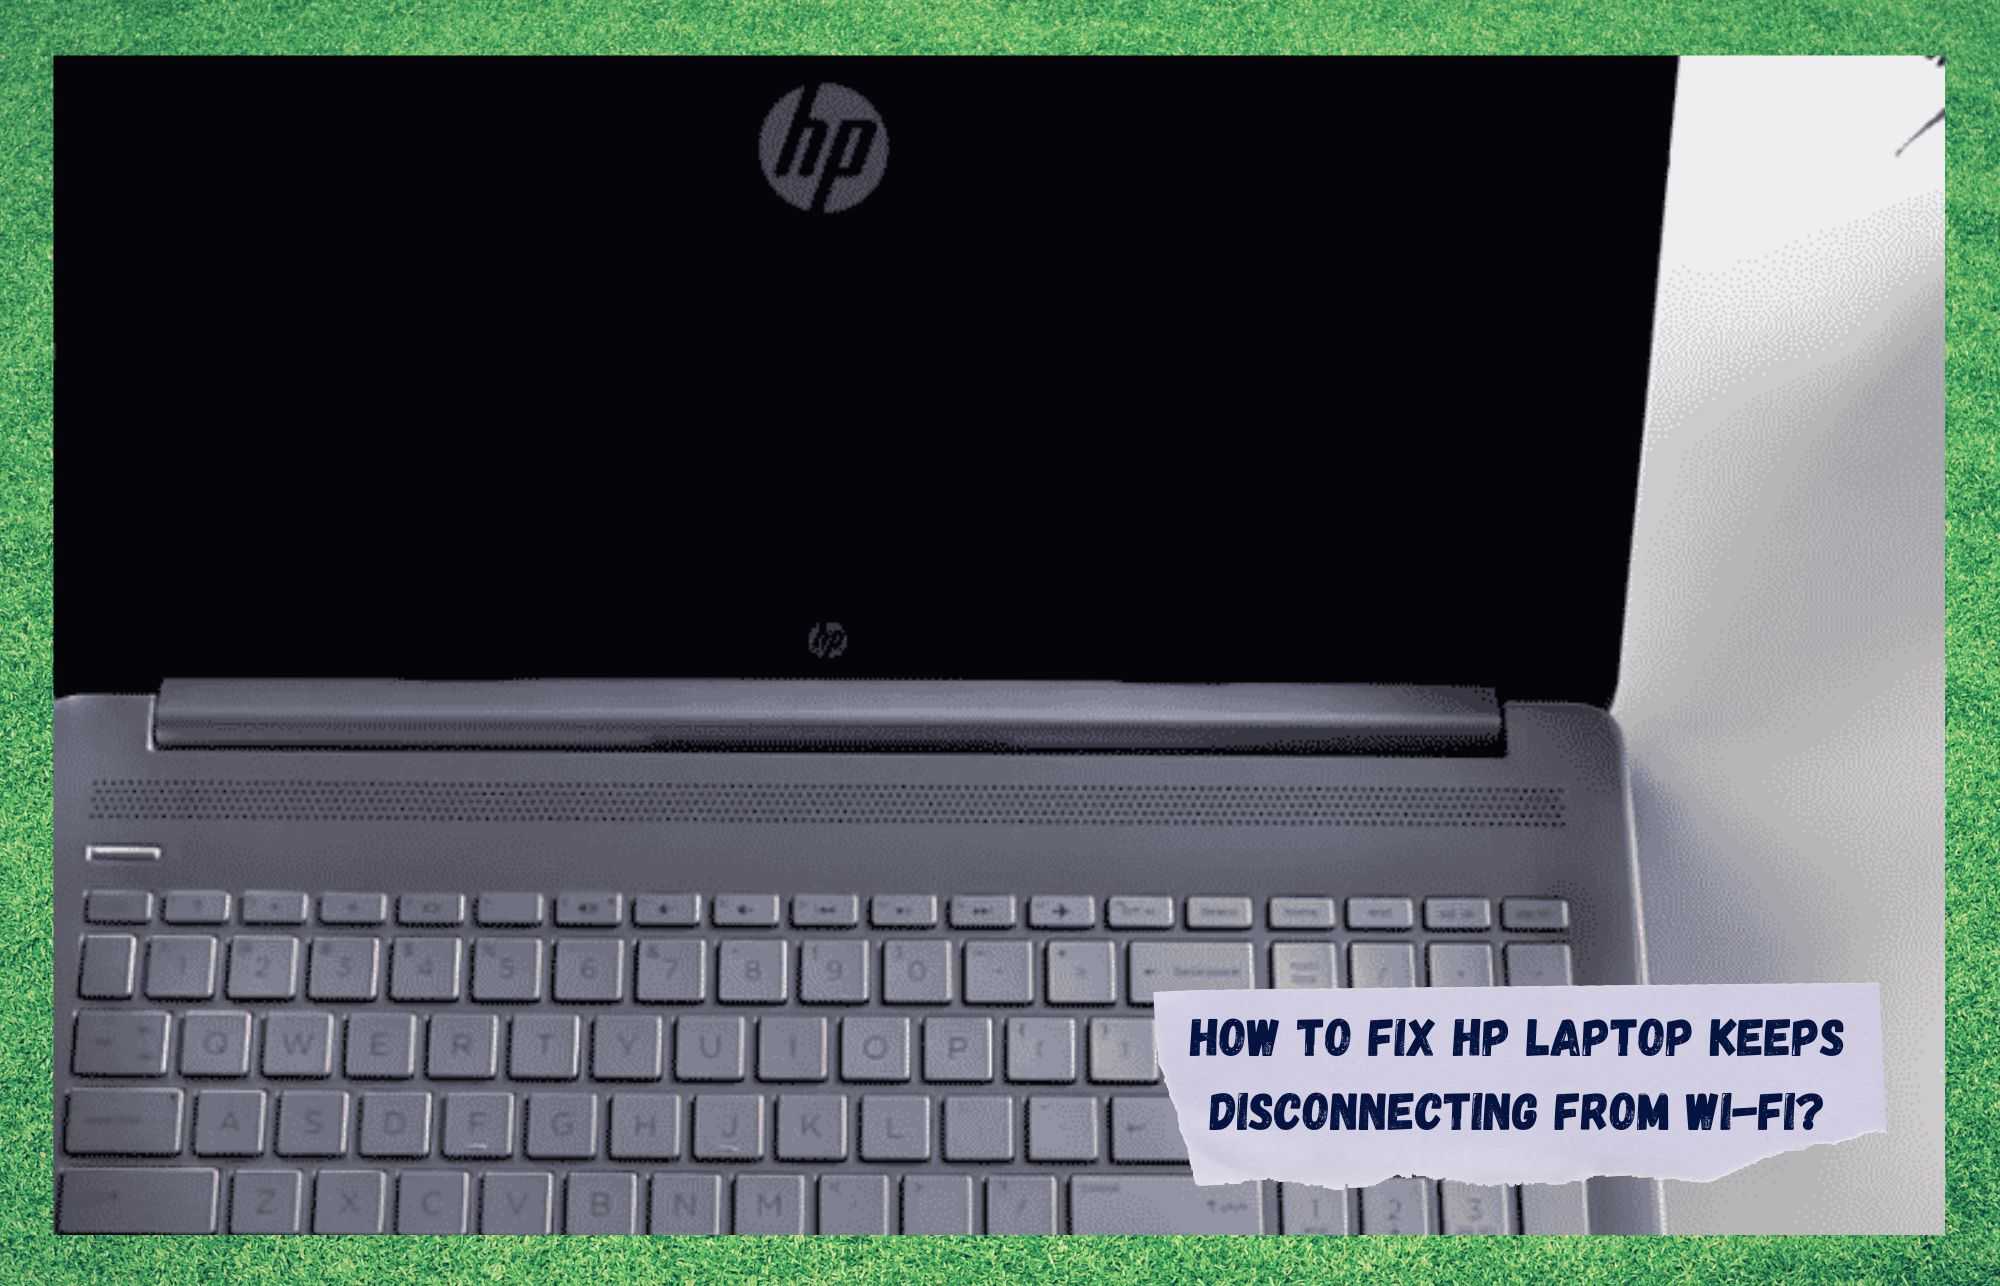 HP ਲੈਪਟਾਪ ਨੂੰ ਠੀਕ ਕਰਨ ਦੇ 6 ਤਰੀਕੇ Wi-Fi ਤੋਂ ਡਿਸਕਨੈਕਟ ਹੁੰਦੇ ਰਹਿੰਦੇ ਹਨ